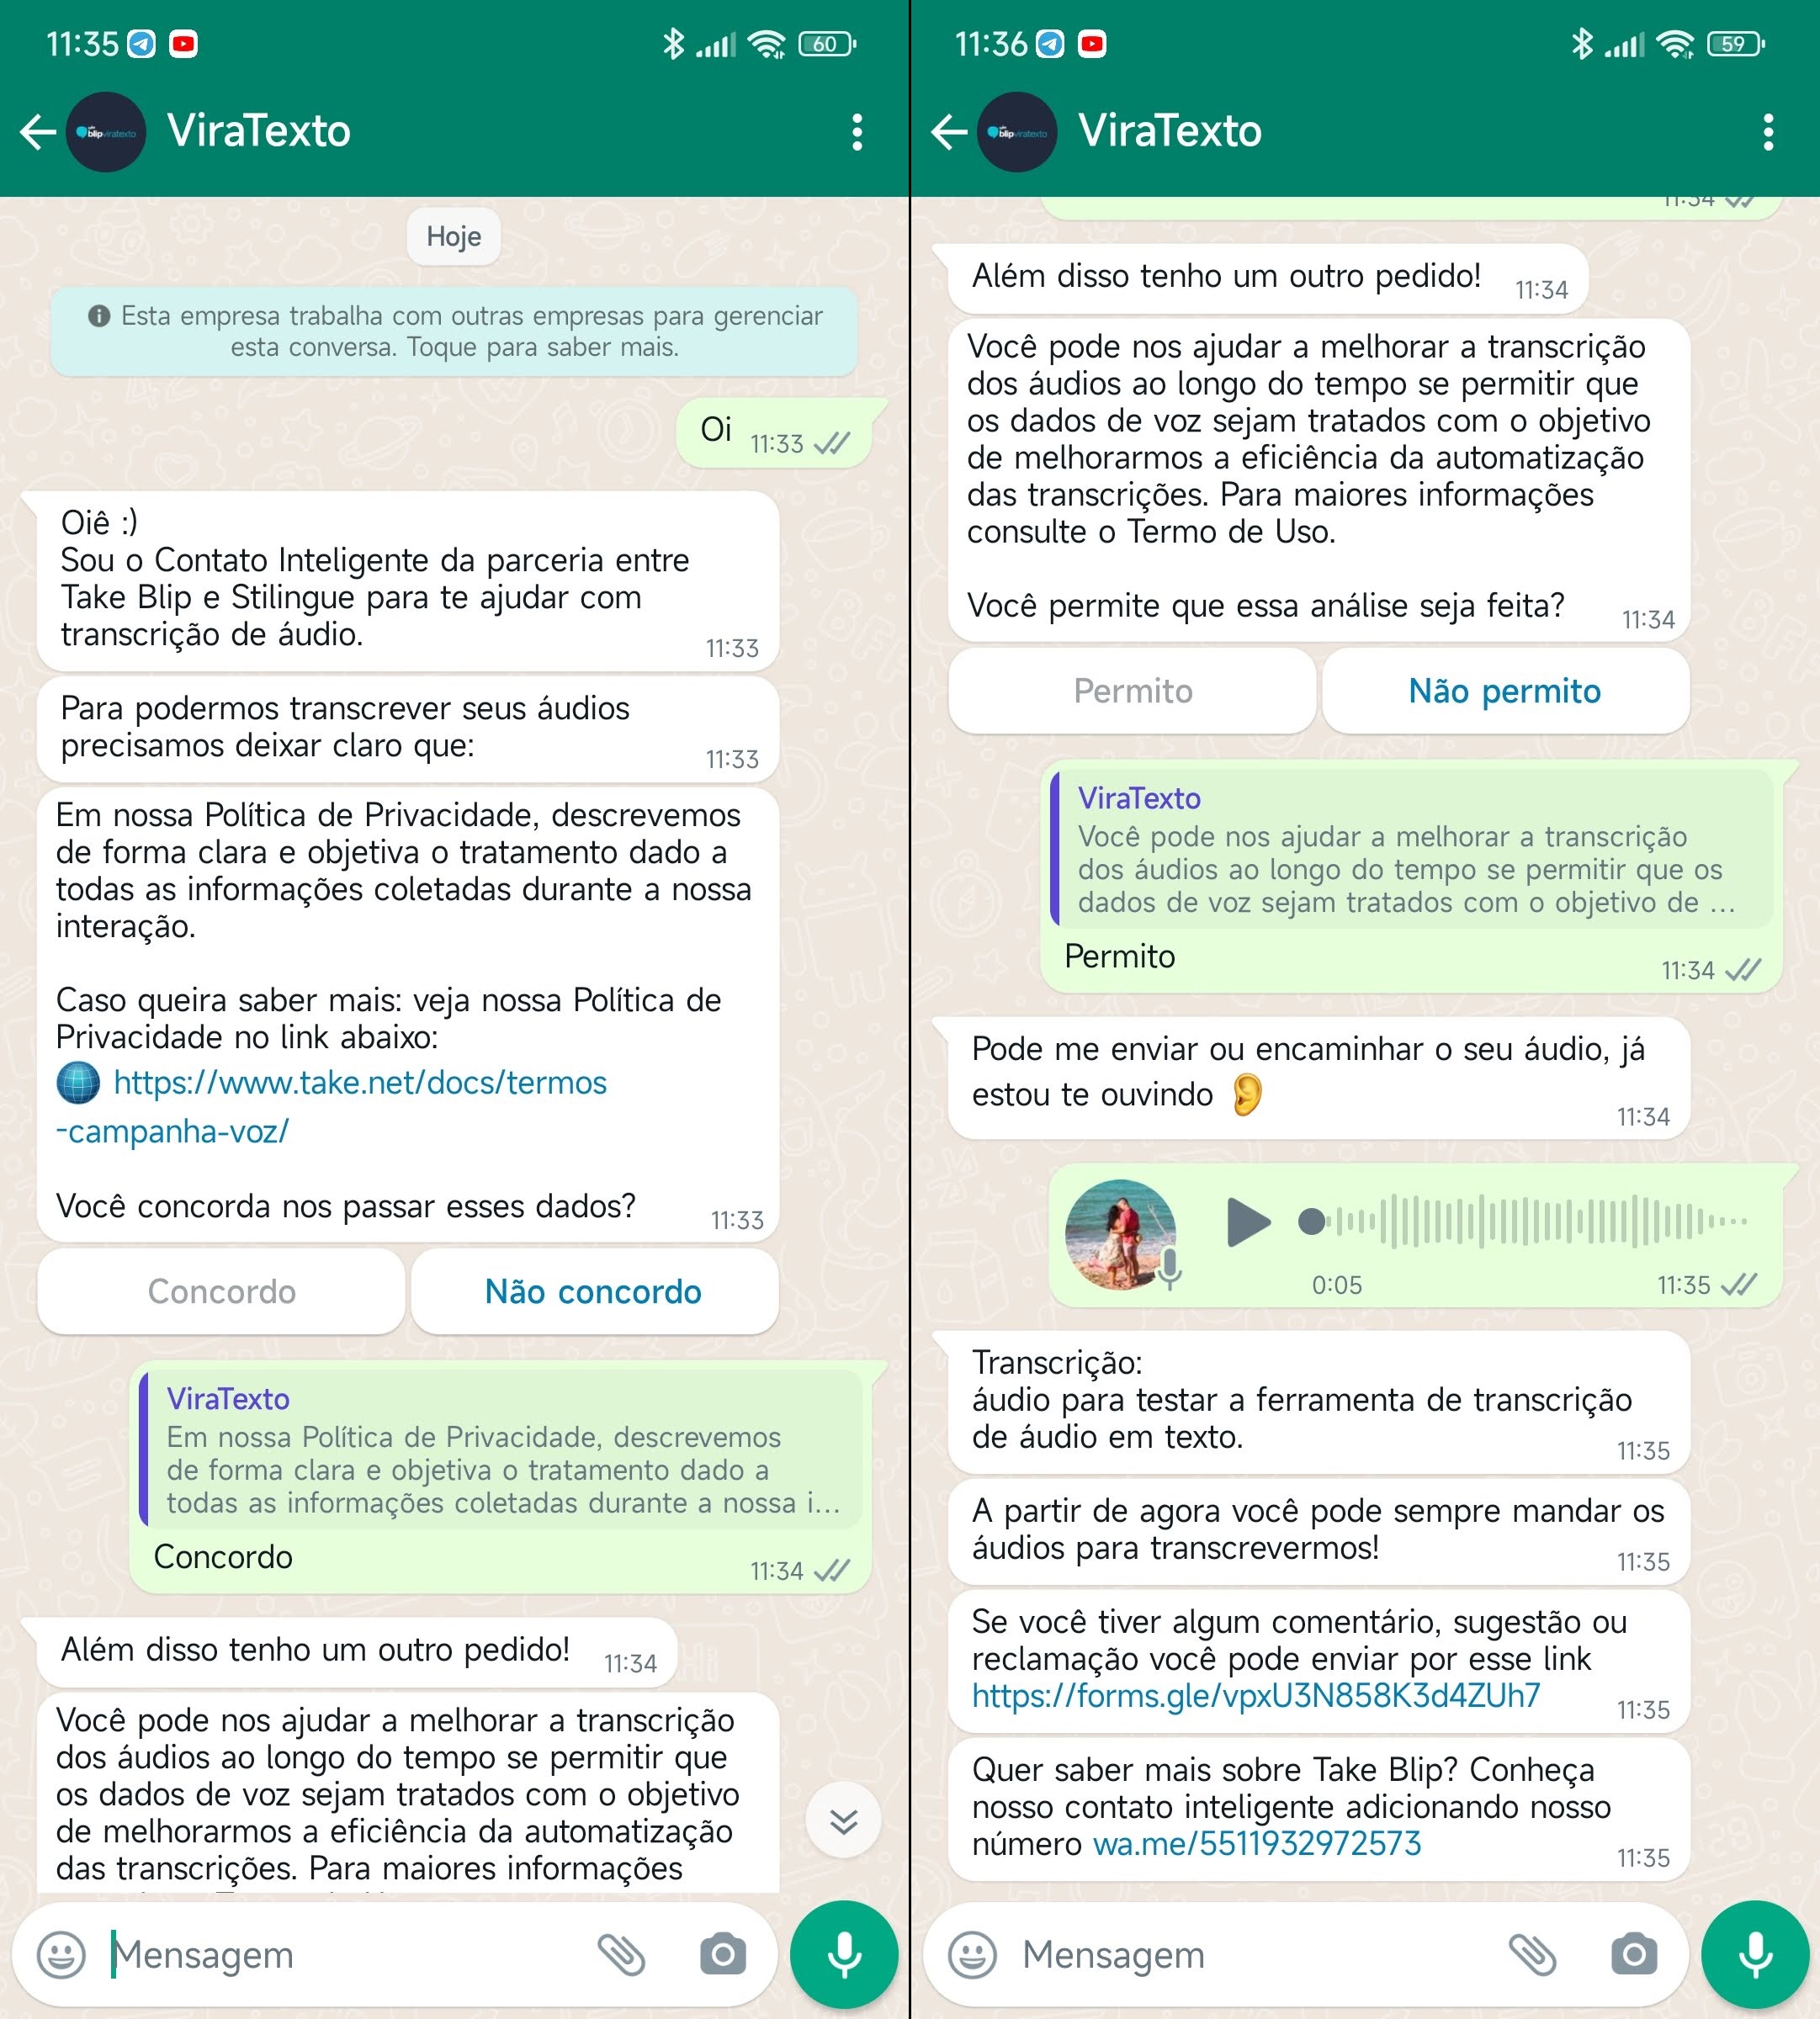 ViraTexto-WhatsApp